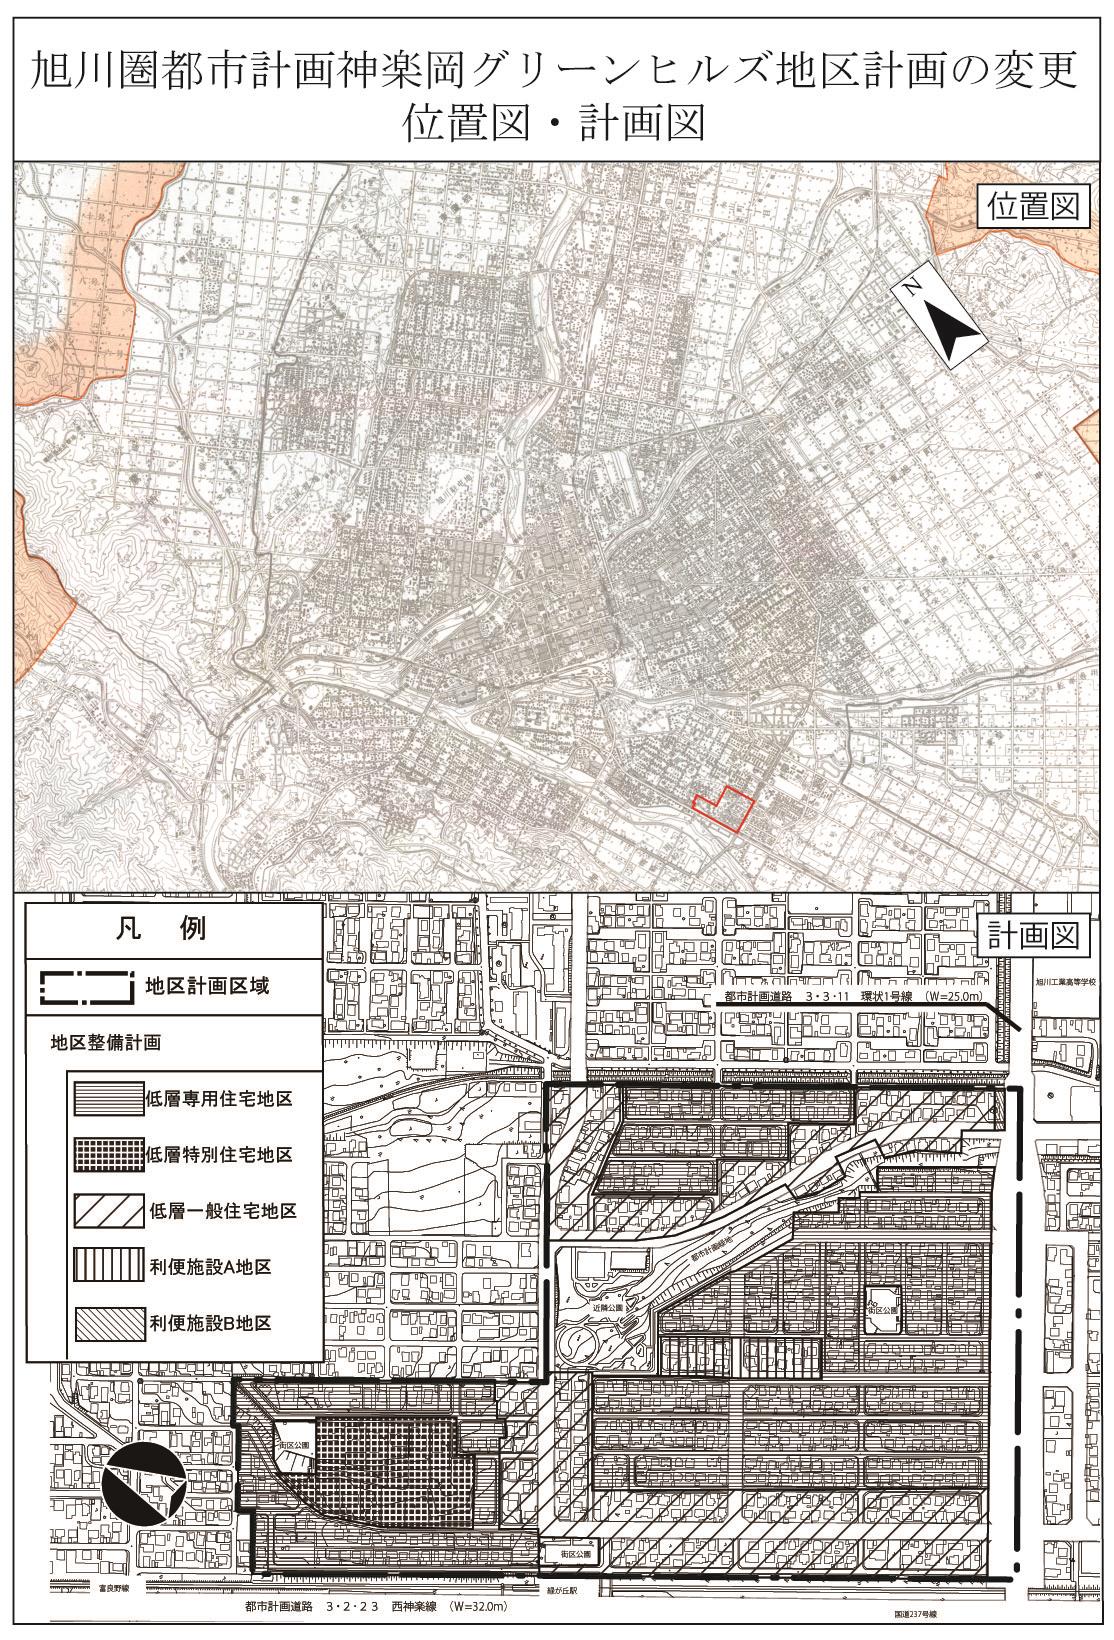 神楽岡グリーンヒルズ地区計画計画図